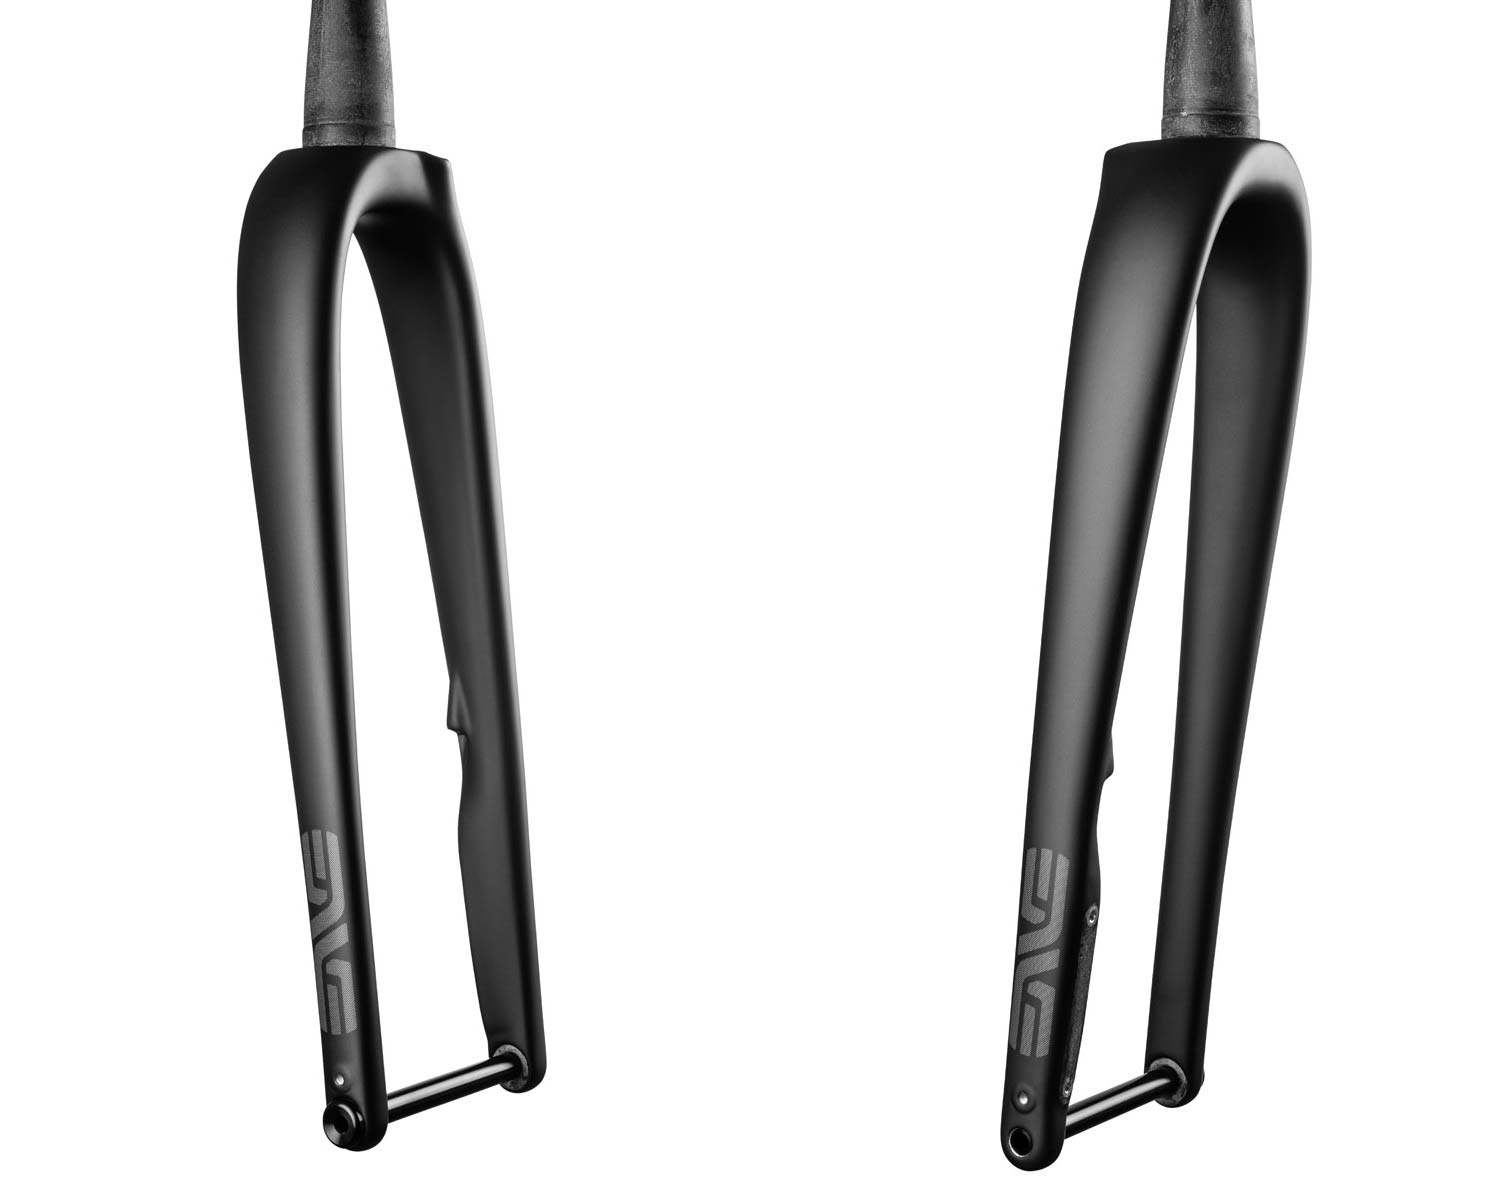 ENVE G Series carbon flared gravel handlebar & gravel fork